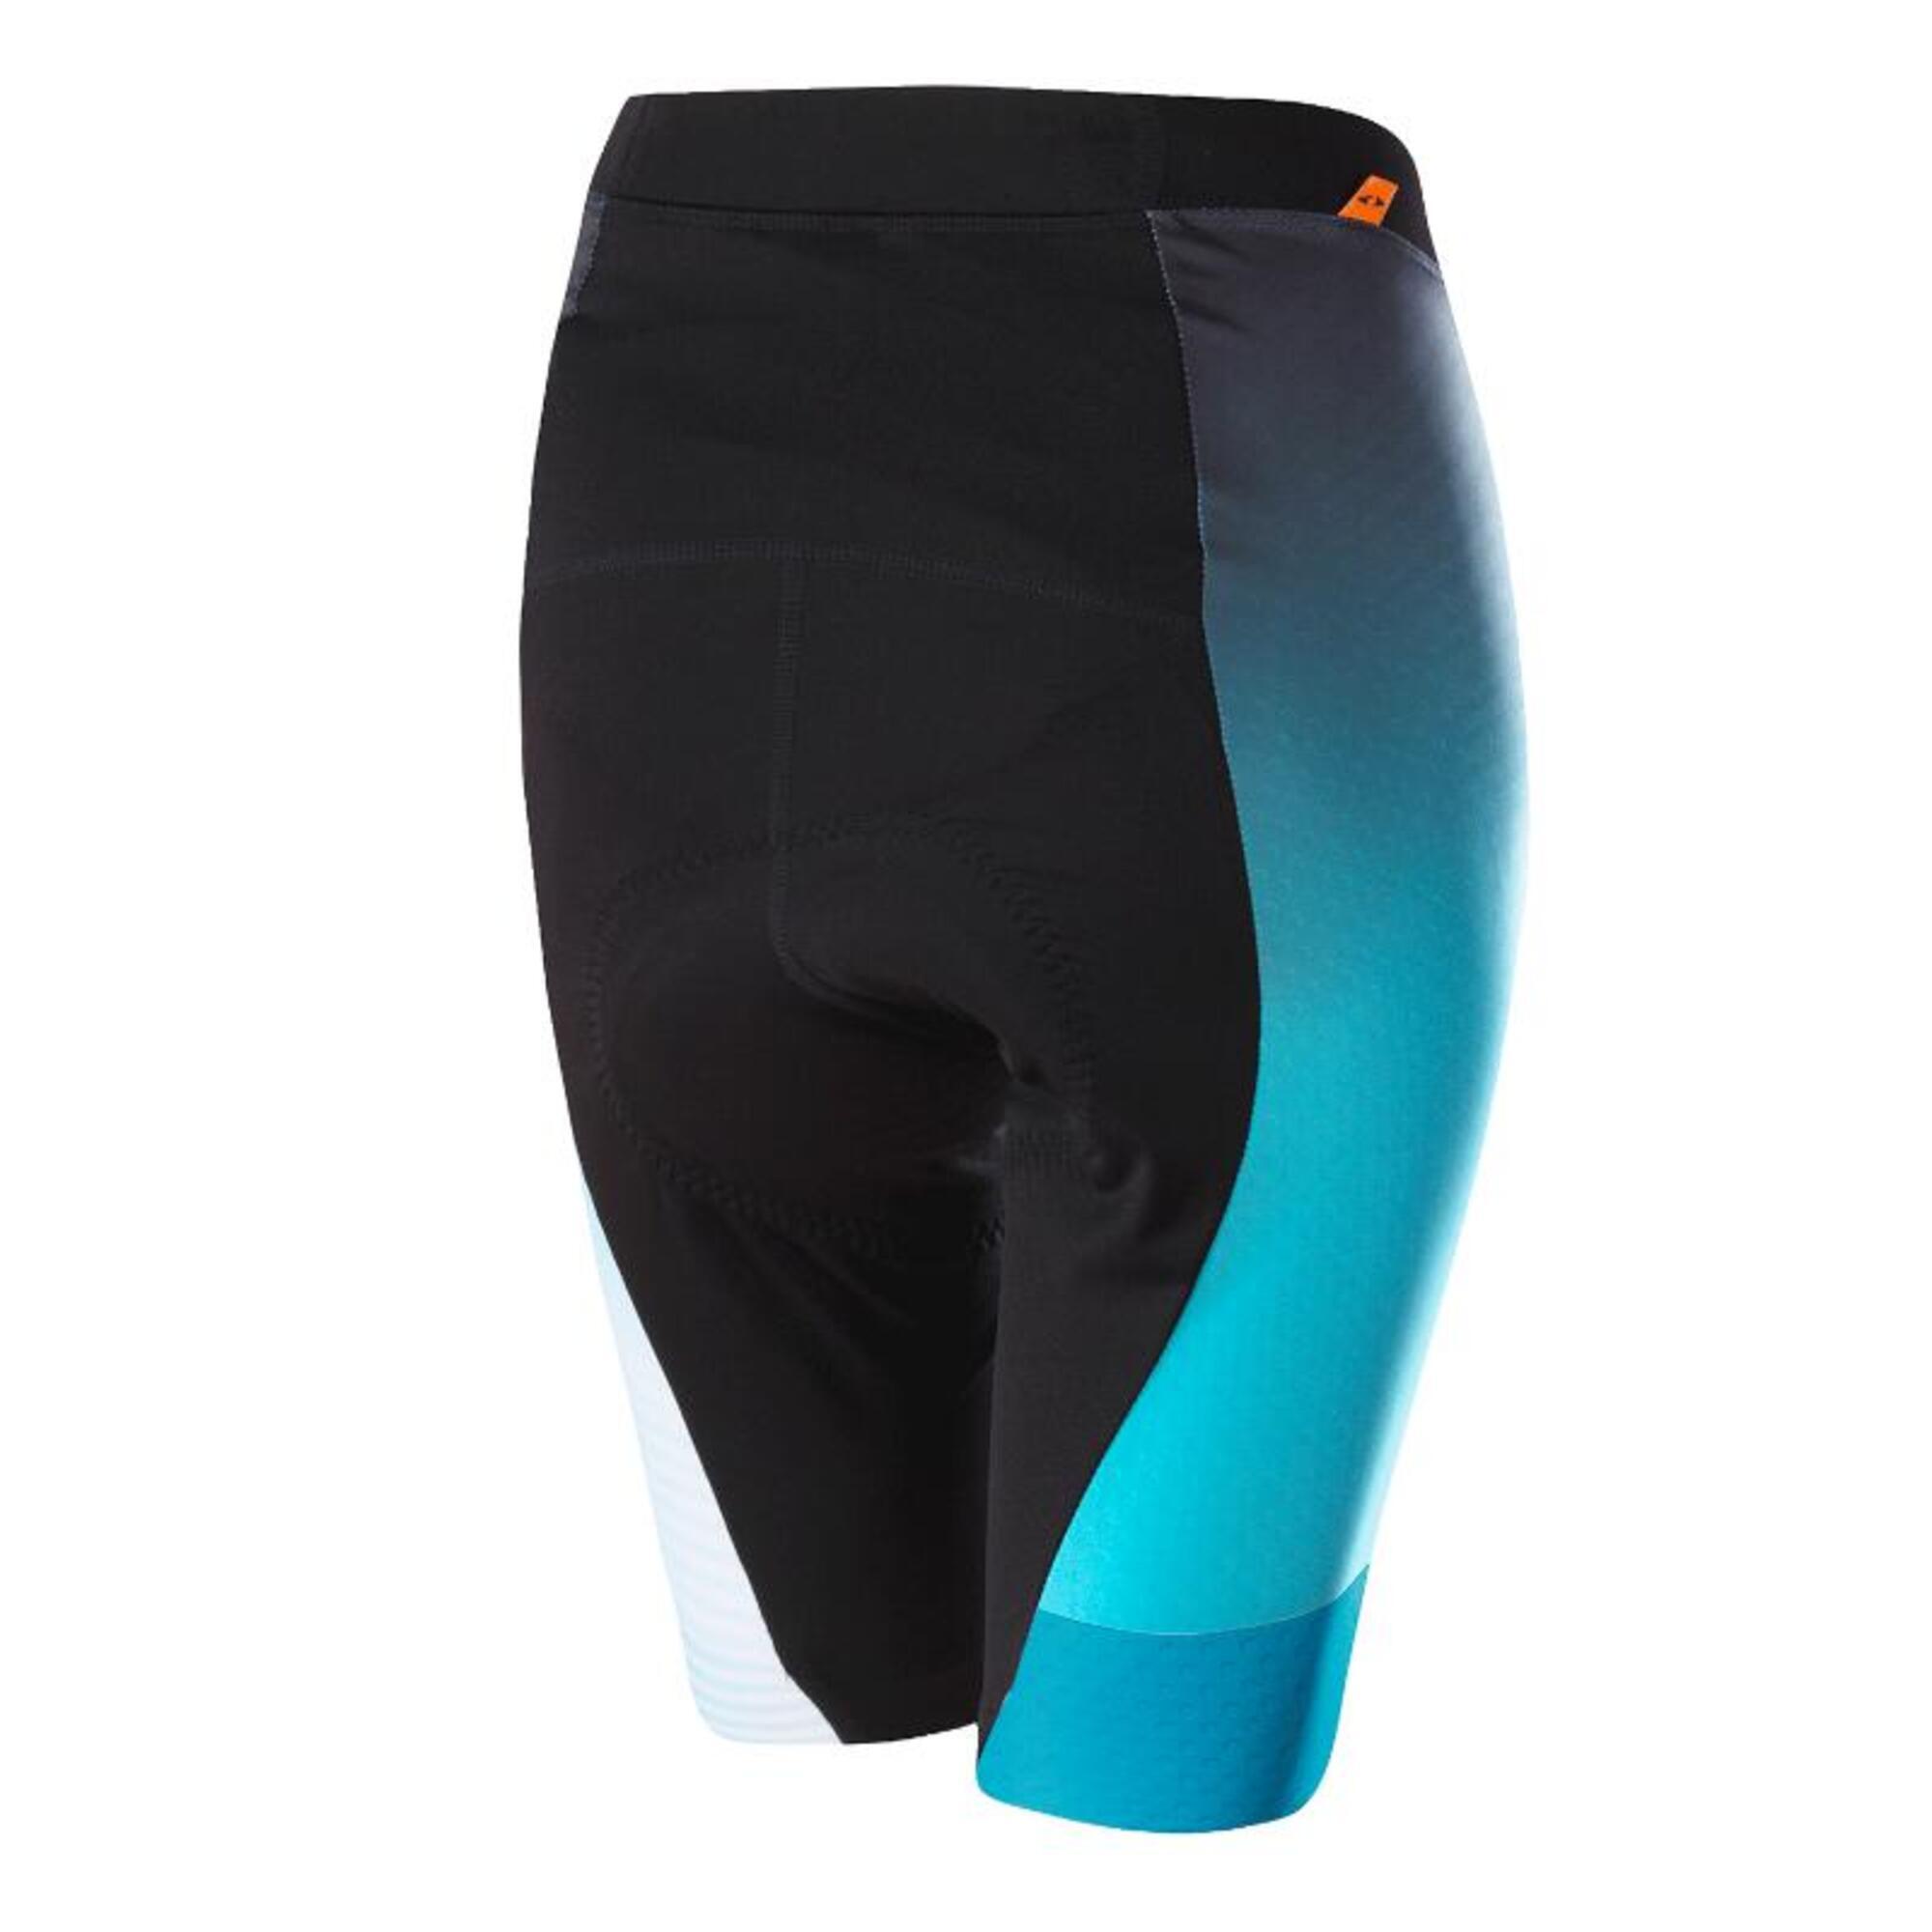 Pantalon de cyclisme femme court W Bike Tights Concept XT - Noir